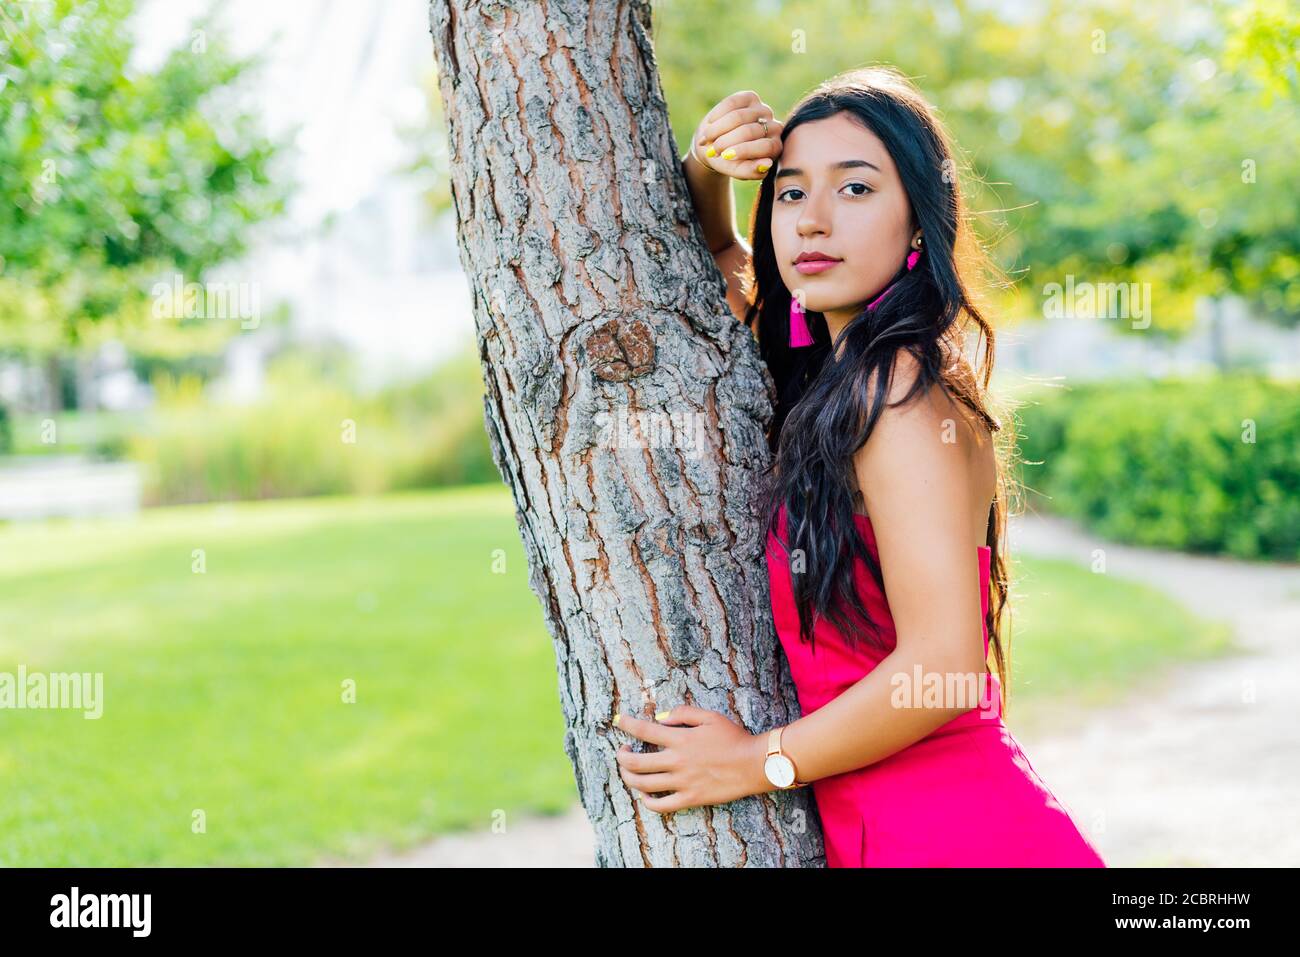 Giovane ragazza Latina bruna con lunghi capelli neri e occhi neri, indossando un vestito rosso, guardando la macchina fotografica appoggiata su un tronco di albero. Copia spazio Foto Stock